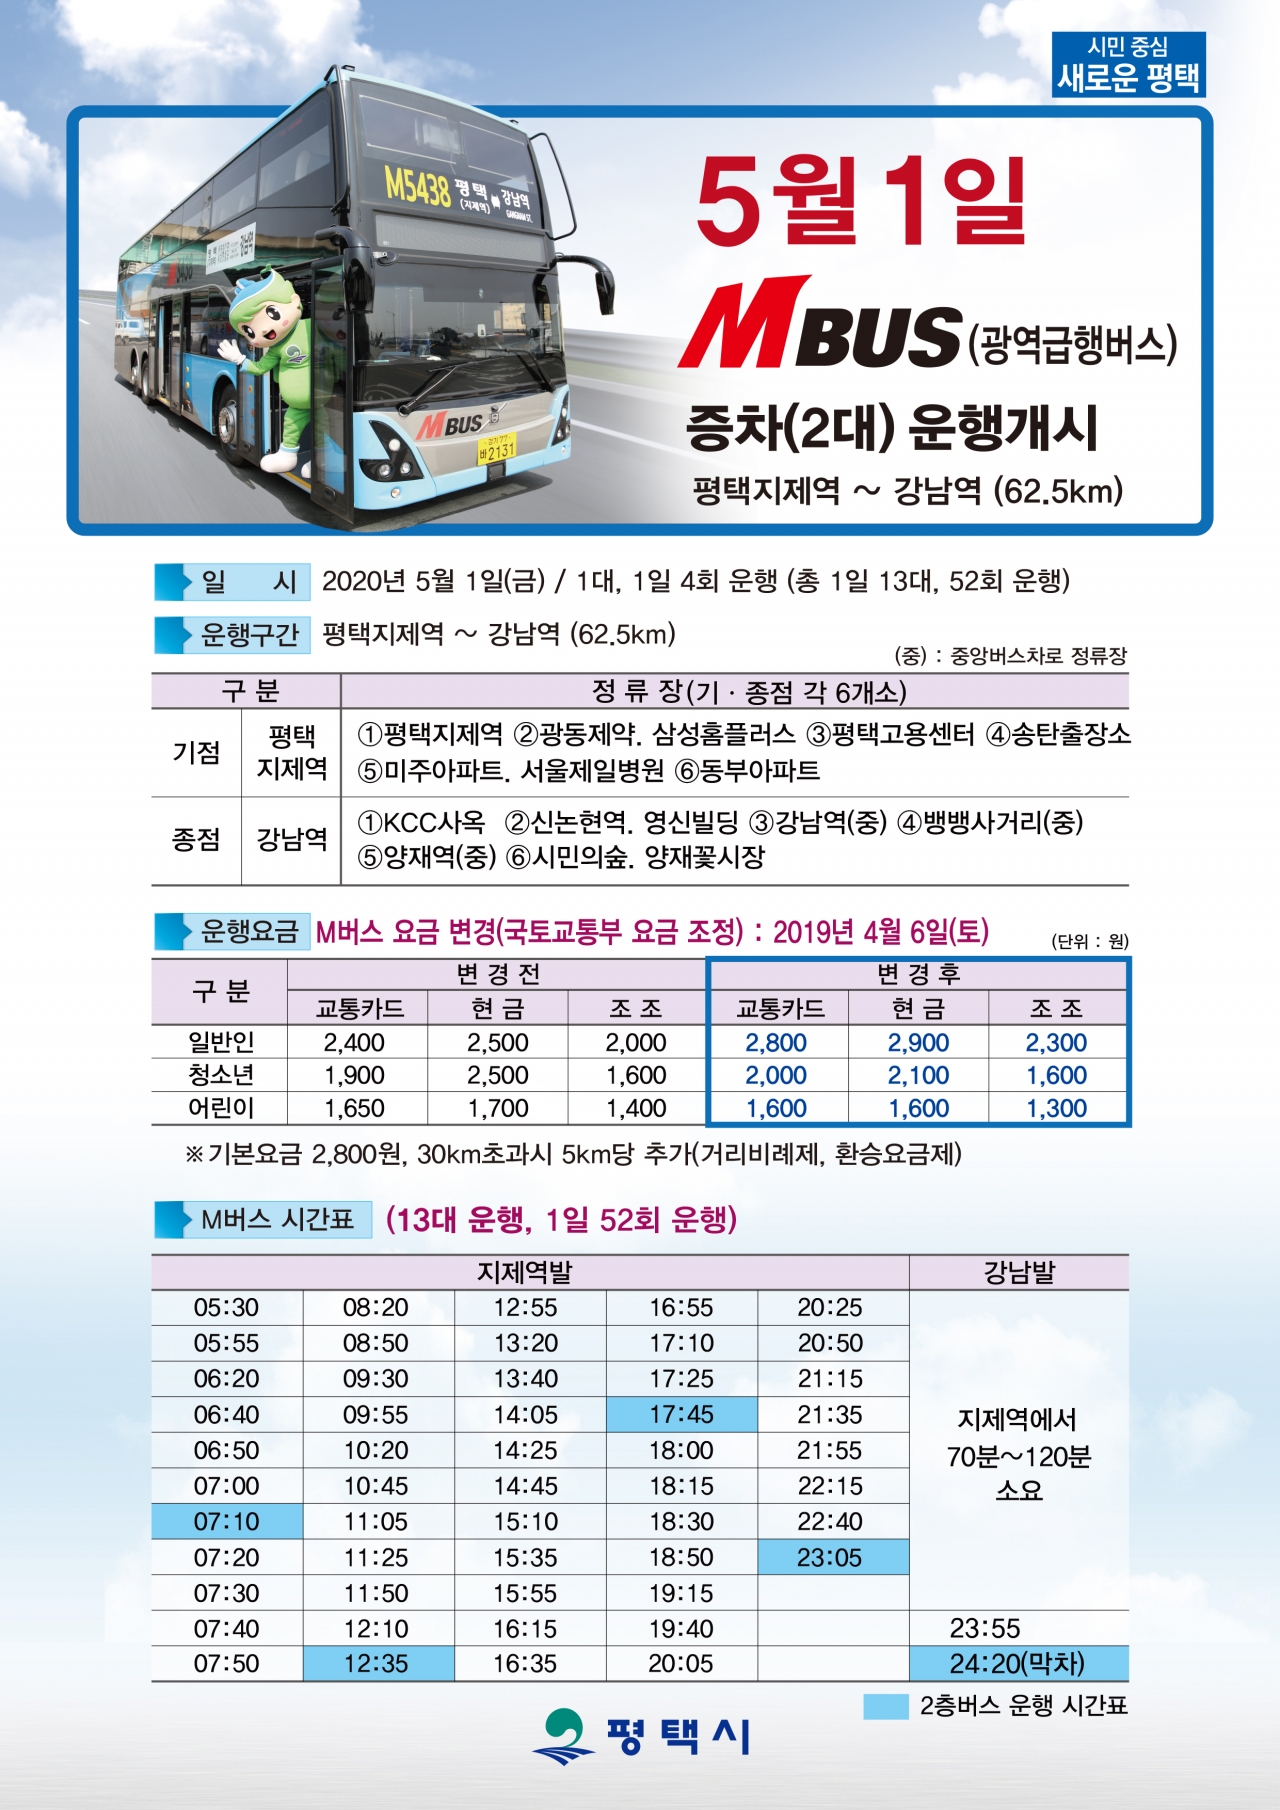 M5438 광역버스 노선 시간표. 평택시 제공.